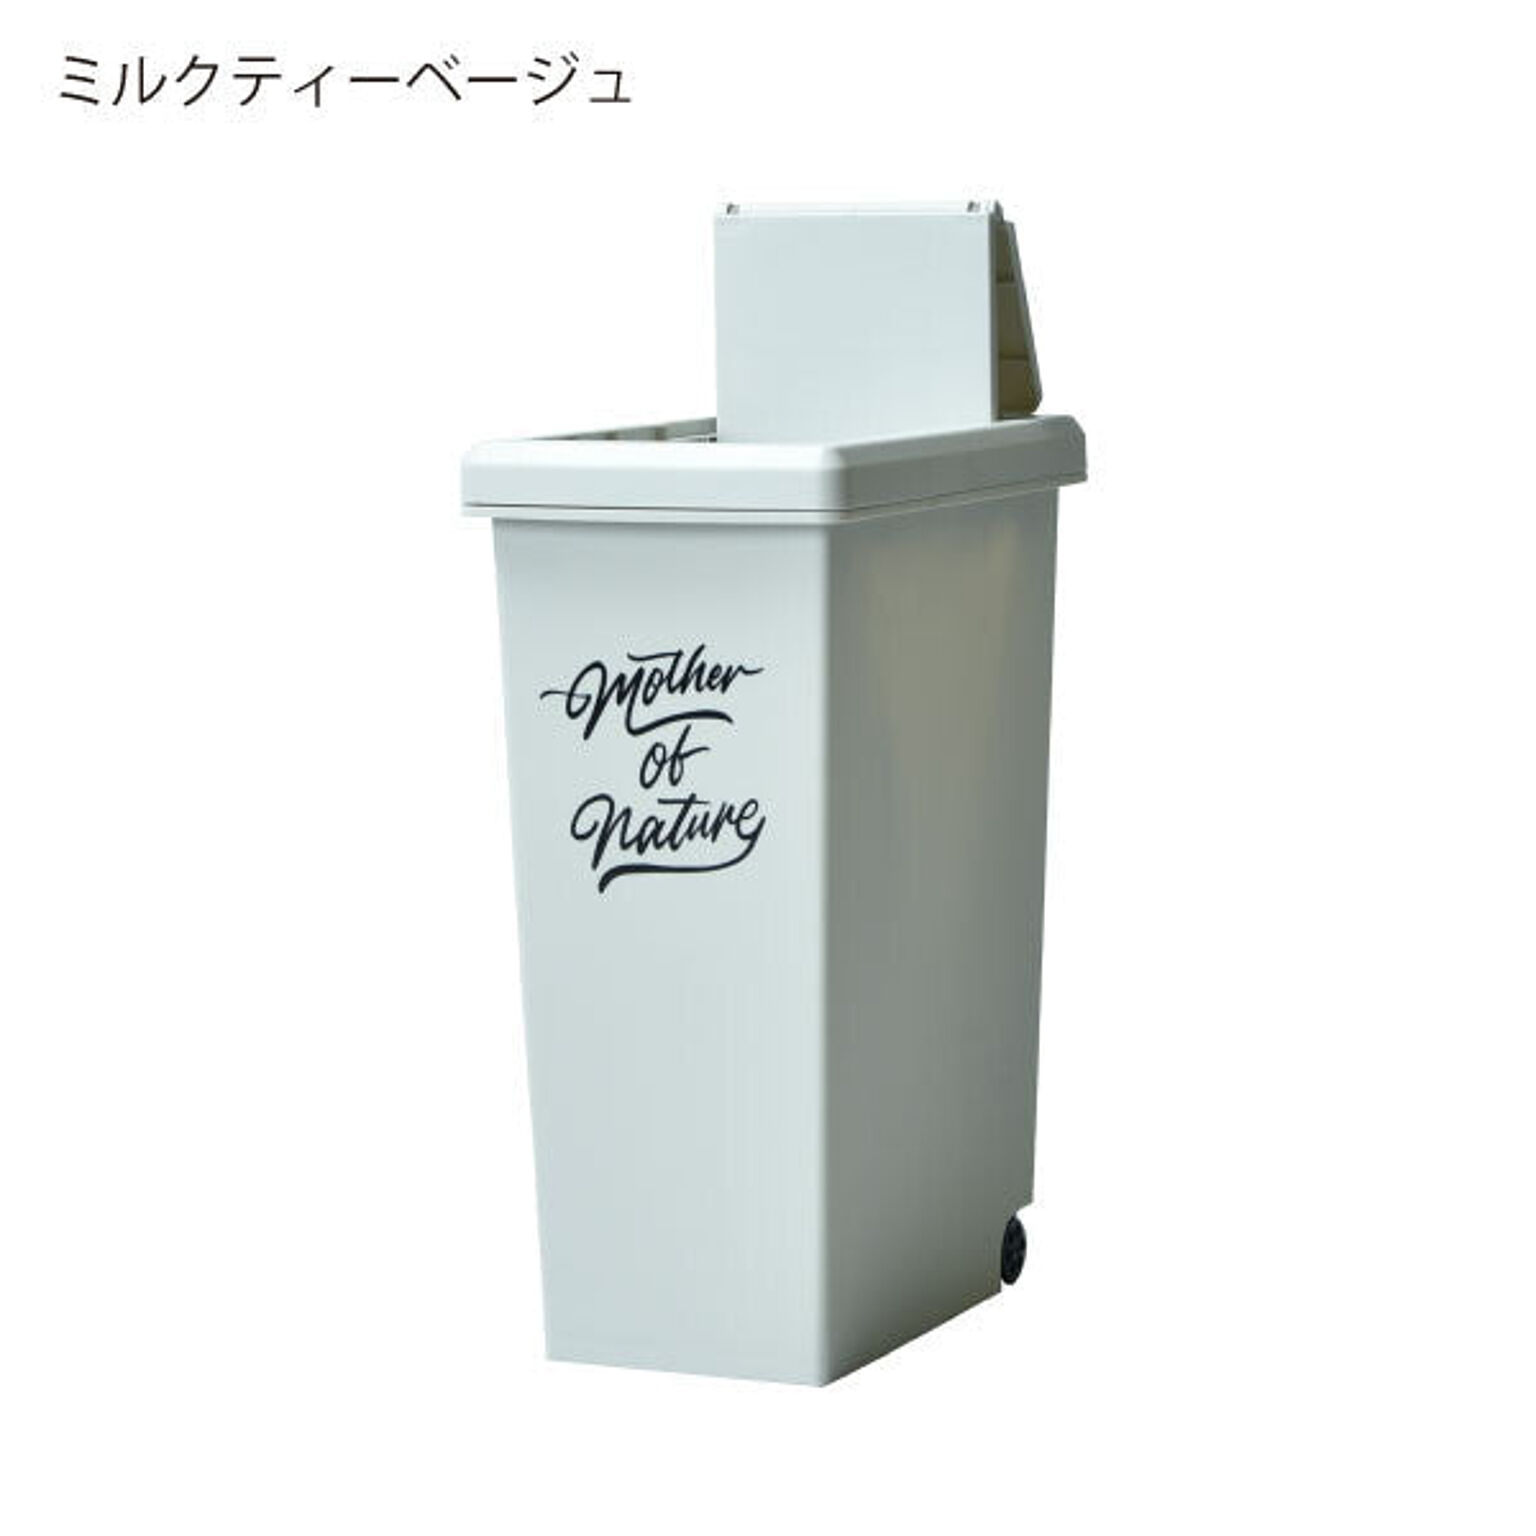 ゴミ箱・ダストボックス